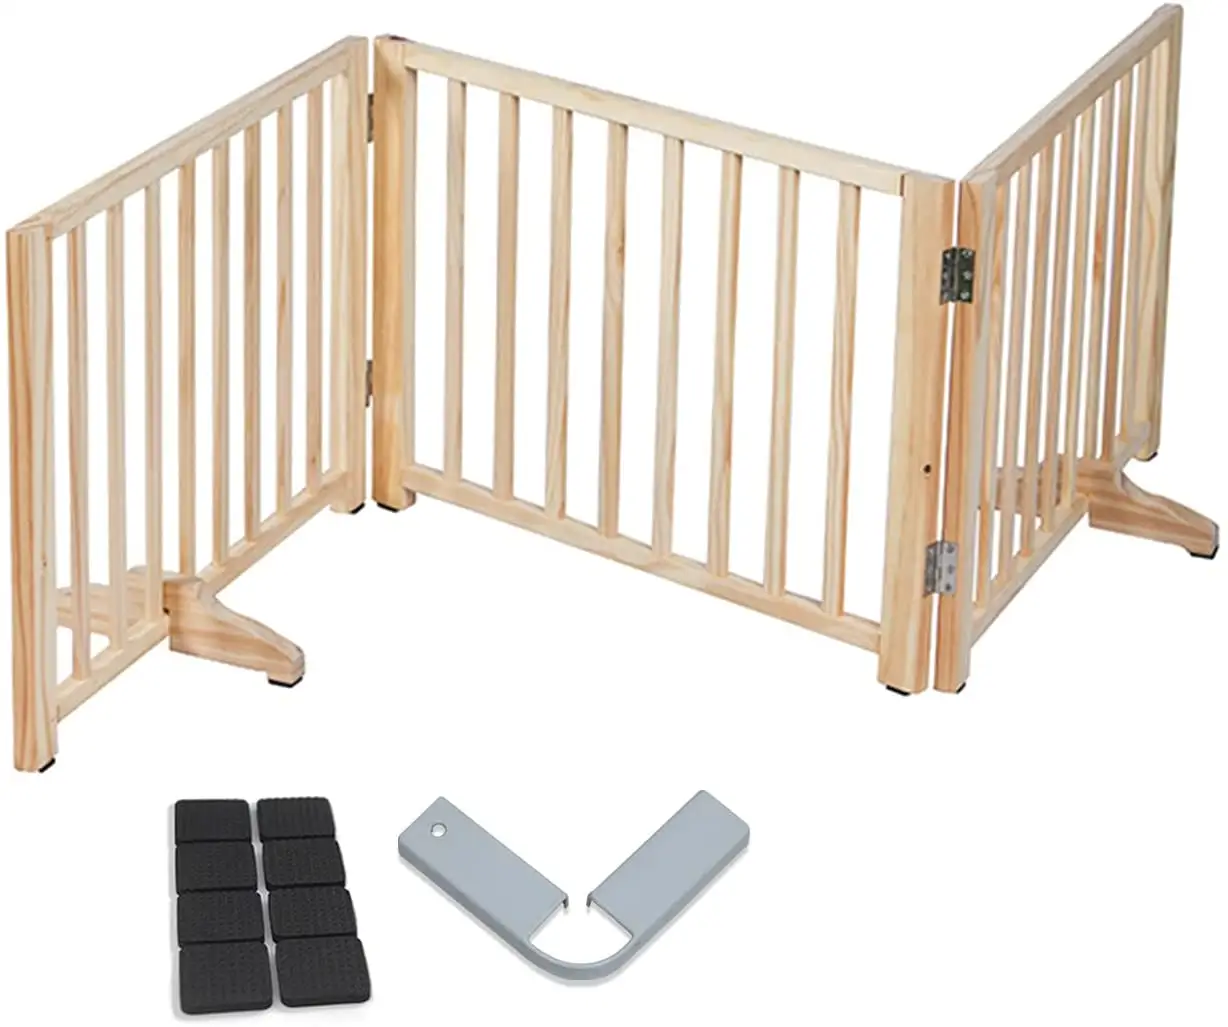 3 Panels Staircase Doorway Freestanding Wooden Dog Gate Foldable Pet Door Indoor Fence